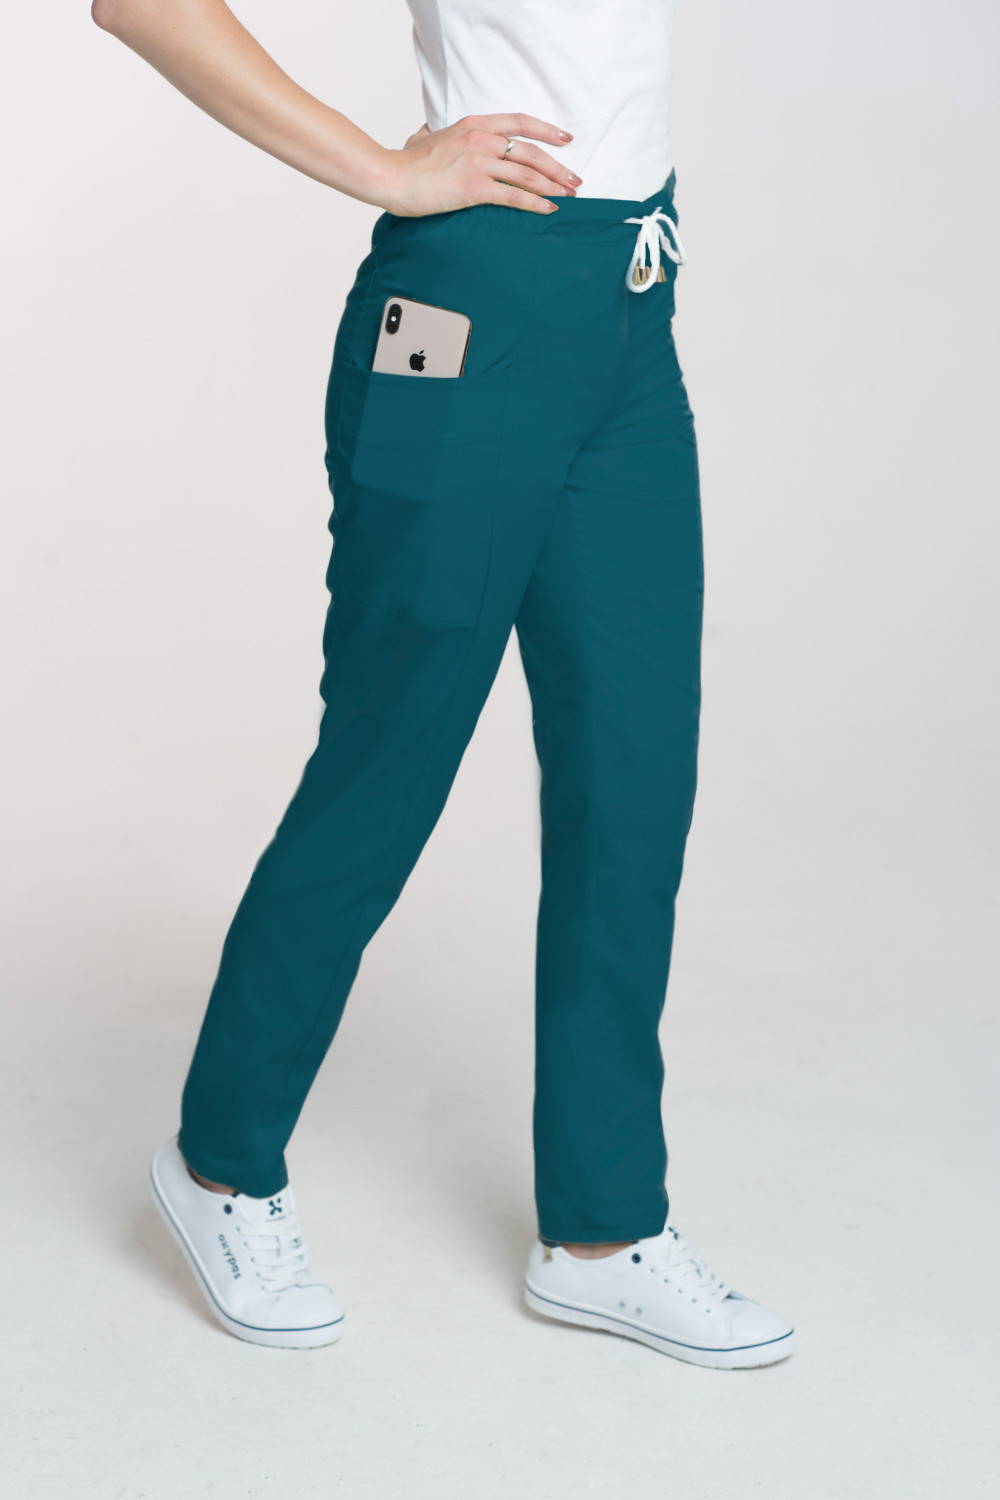 Spodnie medyczne damskie M-200 - ciemna zieleń